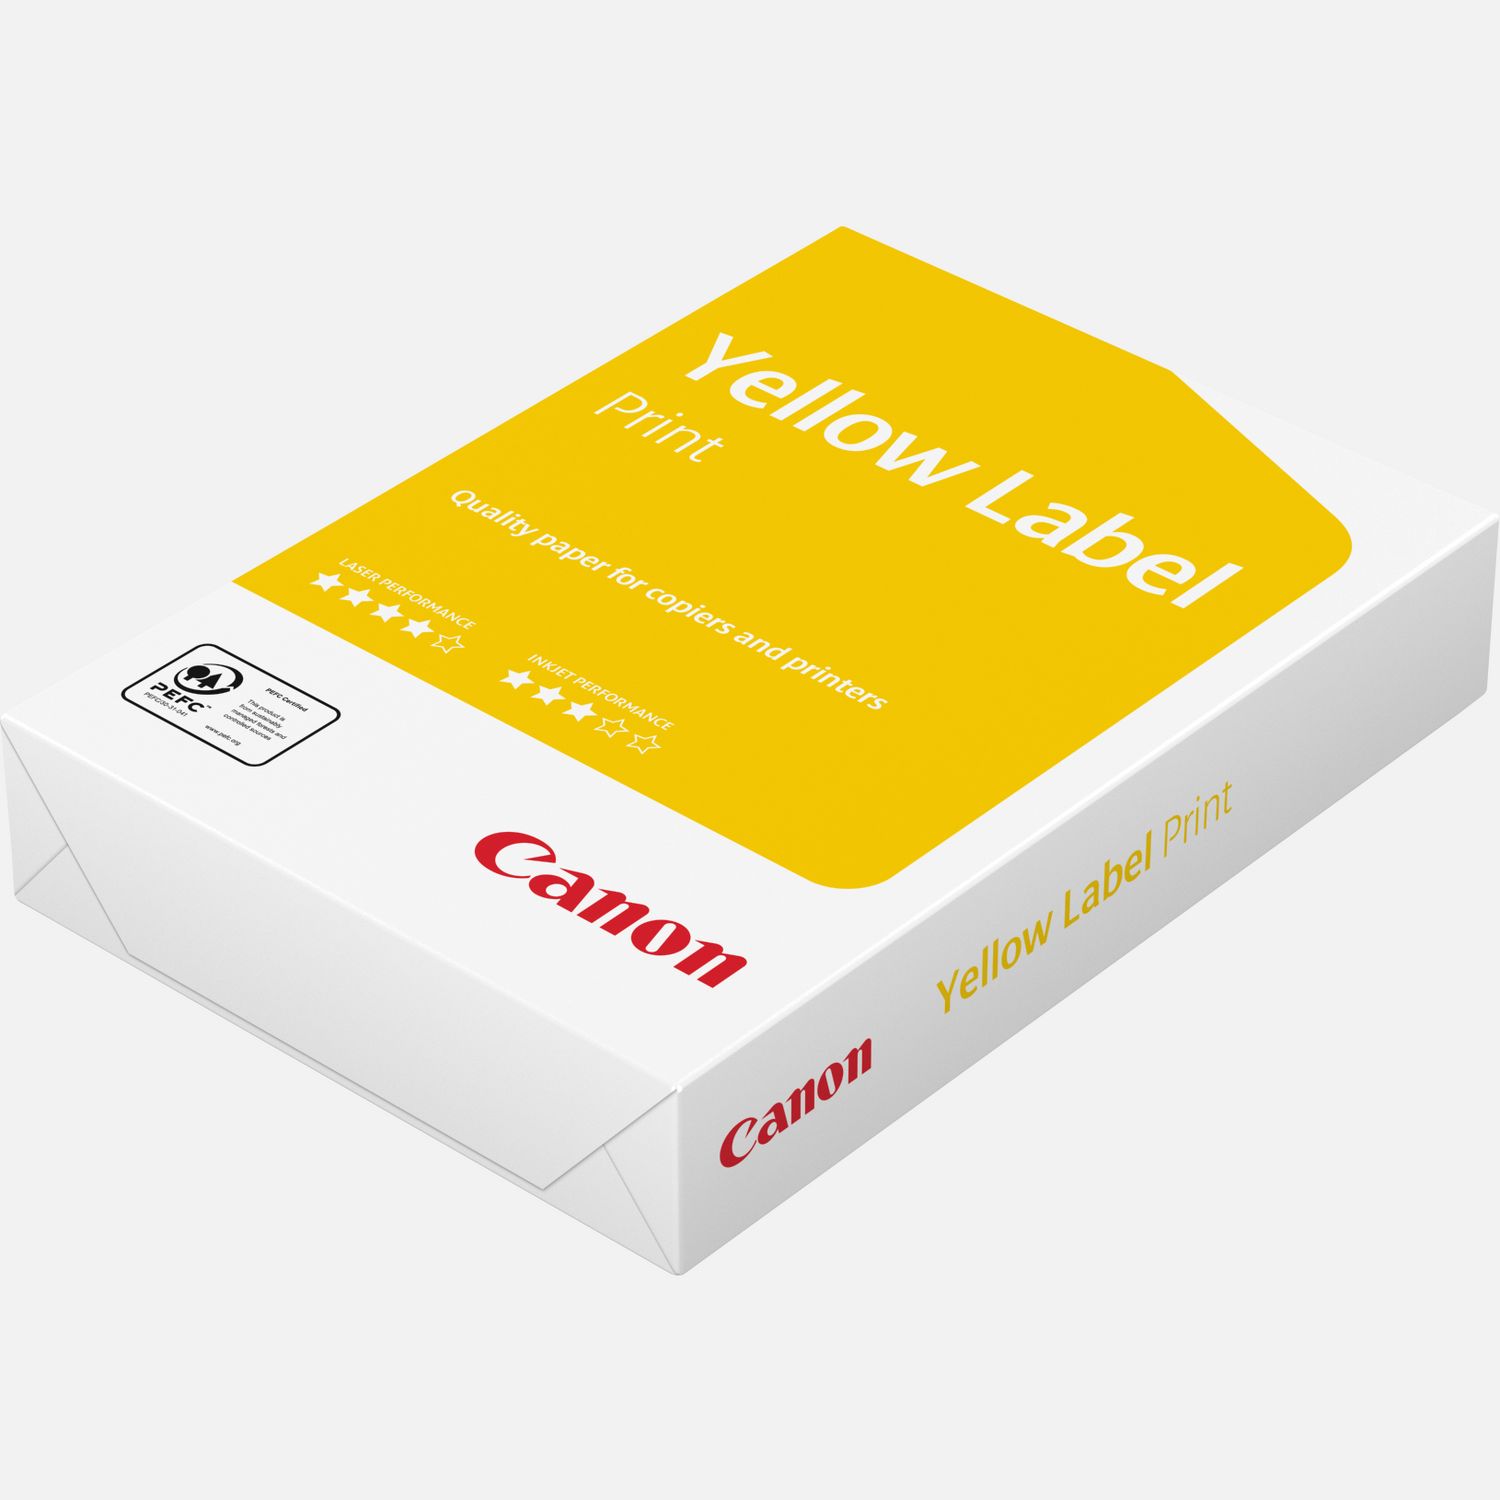 Carta A4 Canon Yellow Label 80 g/m˛ – 500 fogli — Canon Italia Store